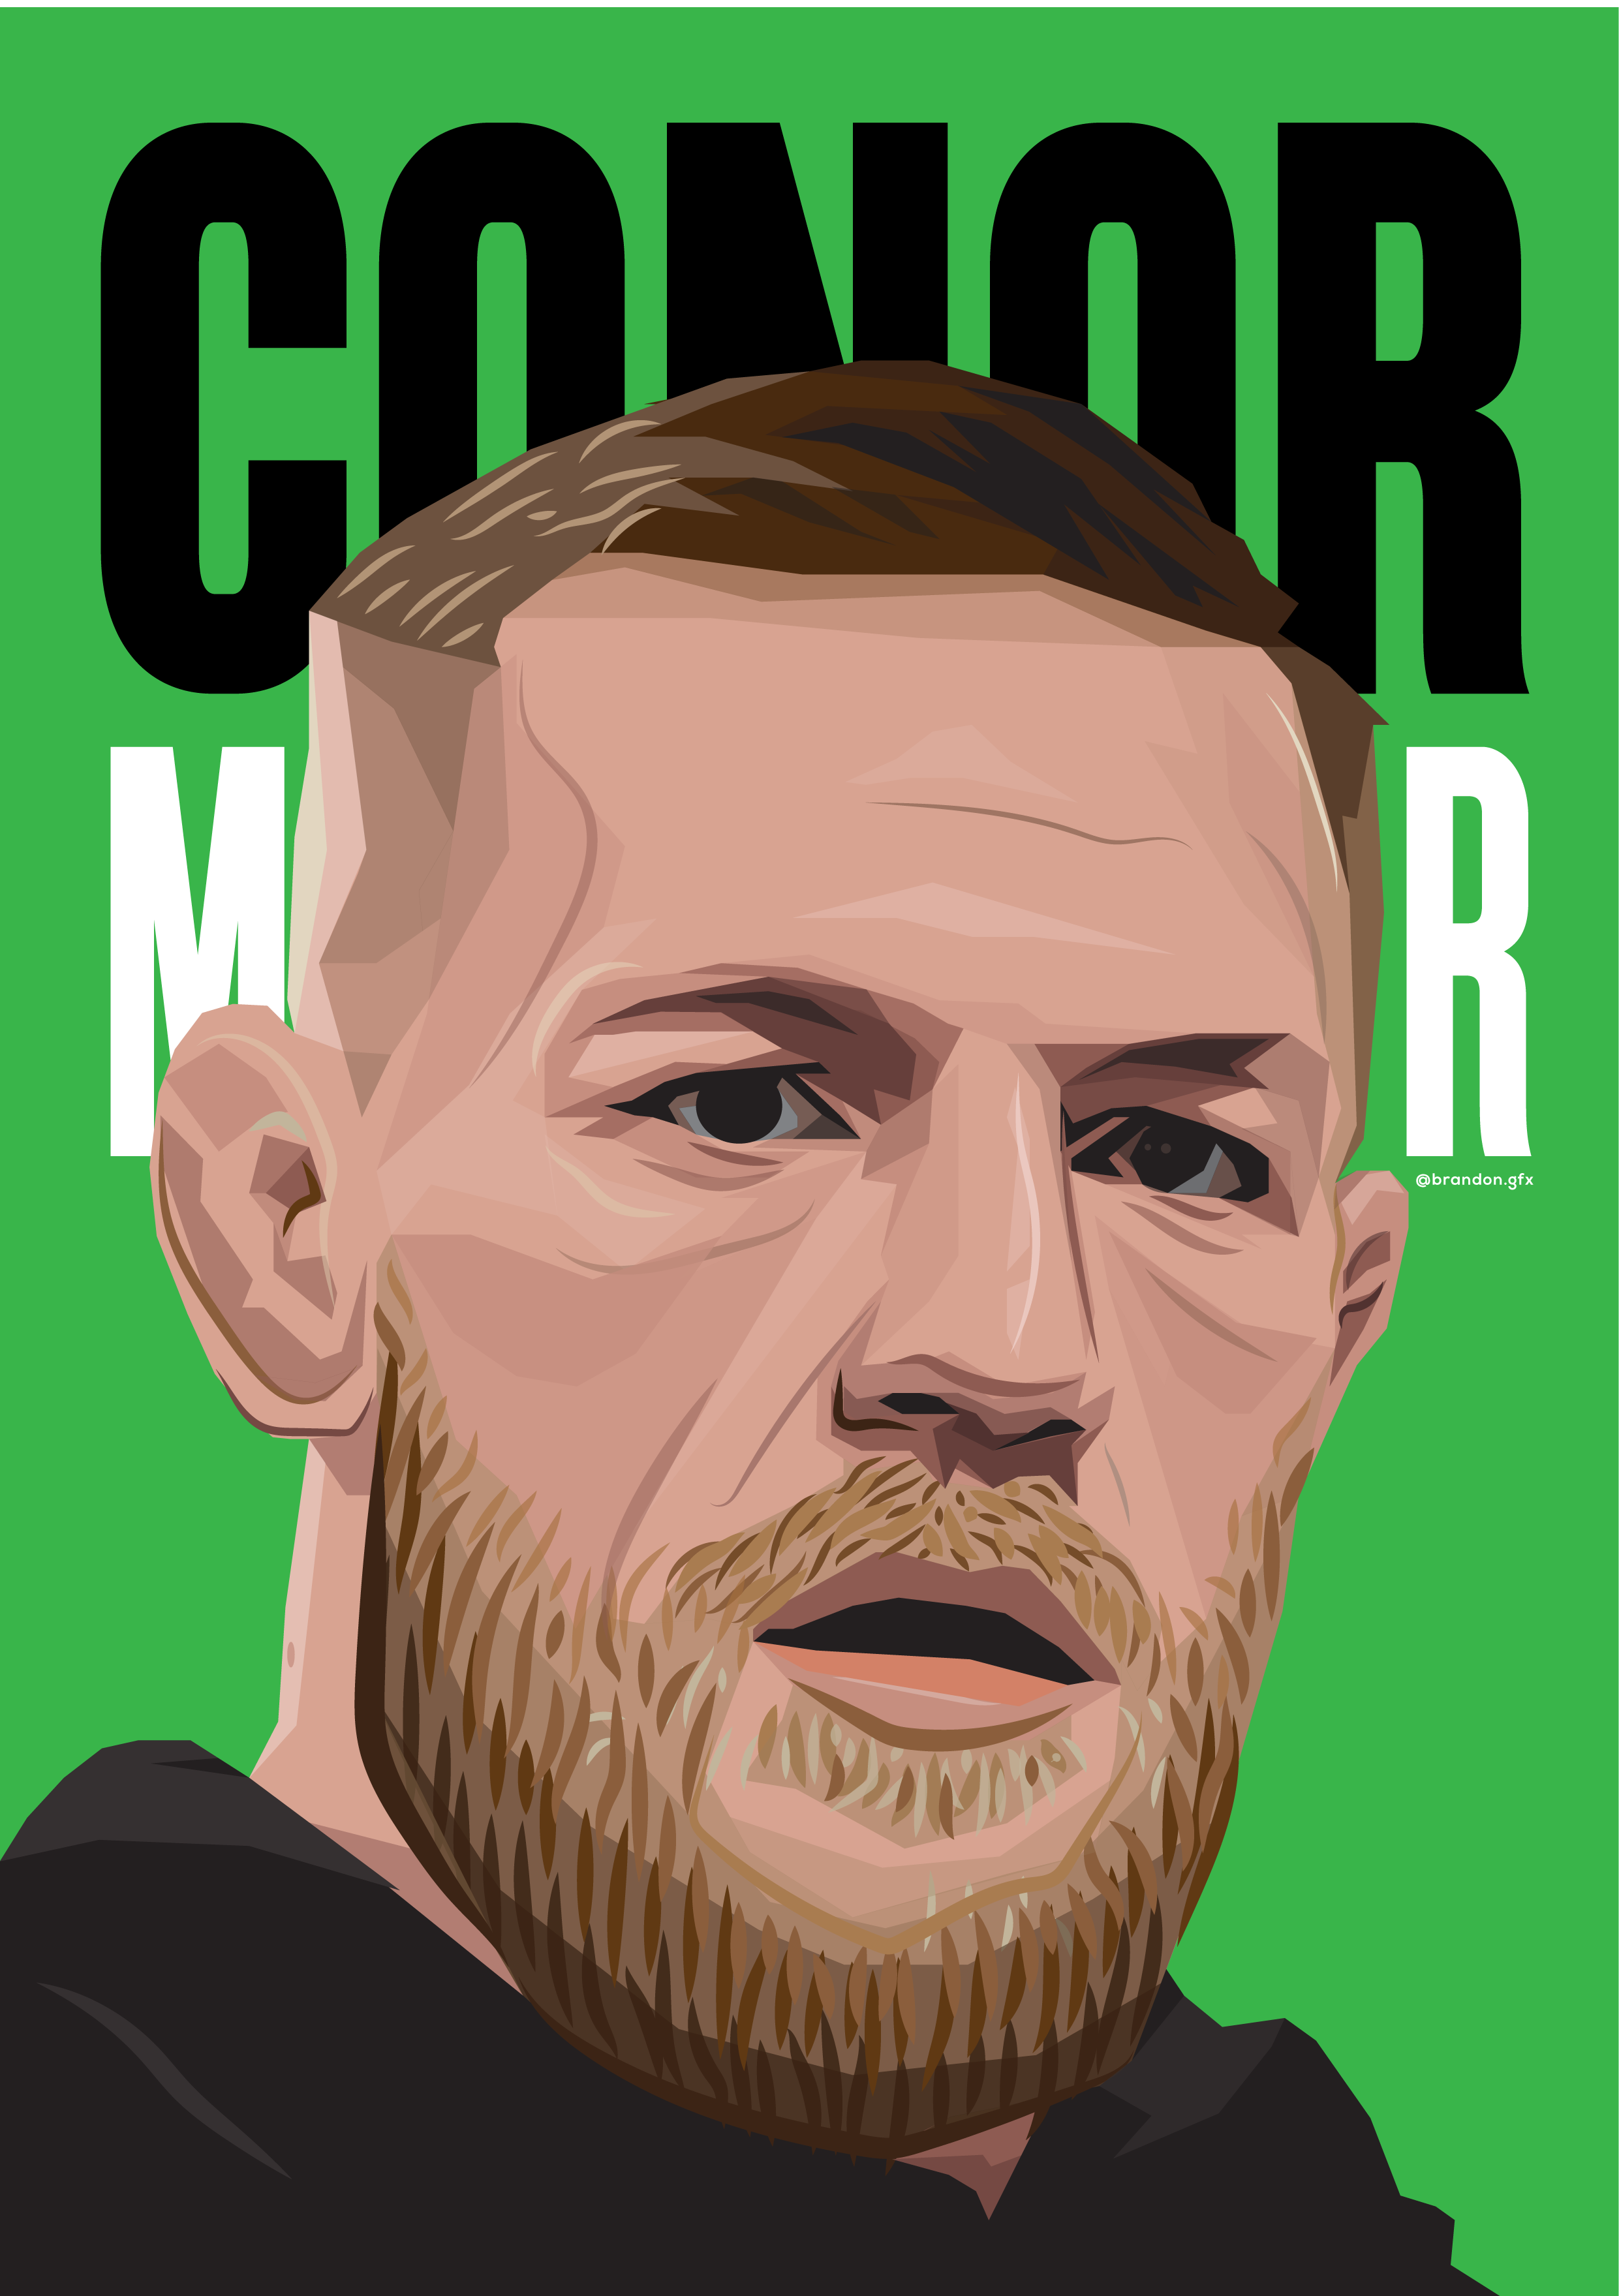 Conor McGregor. Conor mcgregor, Notorious mcgregor